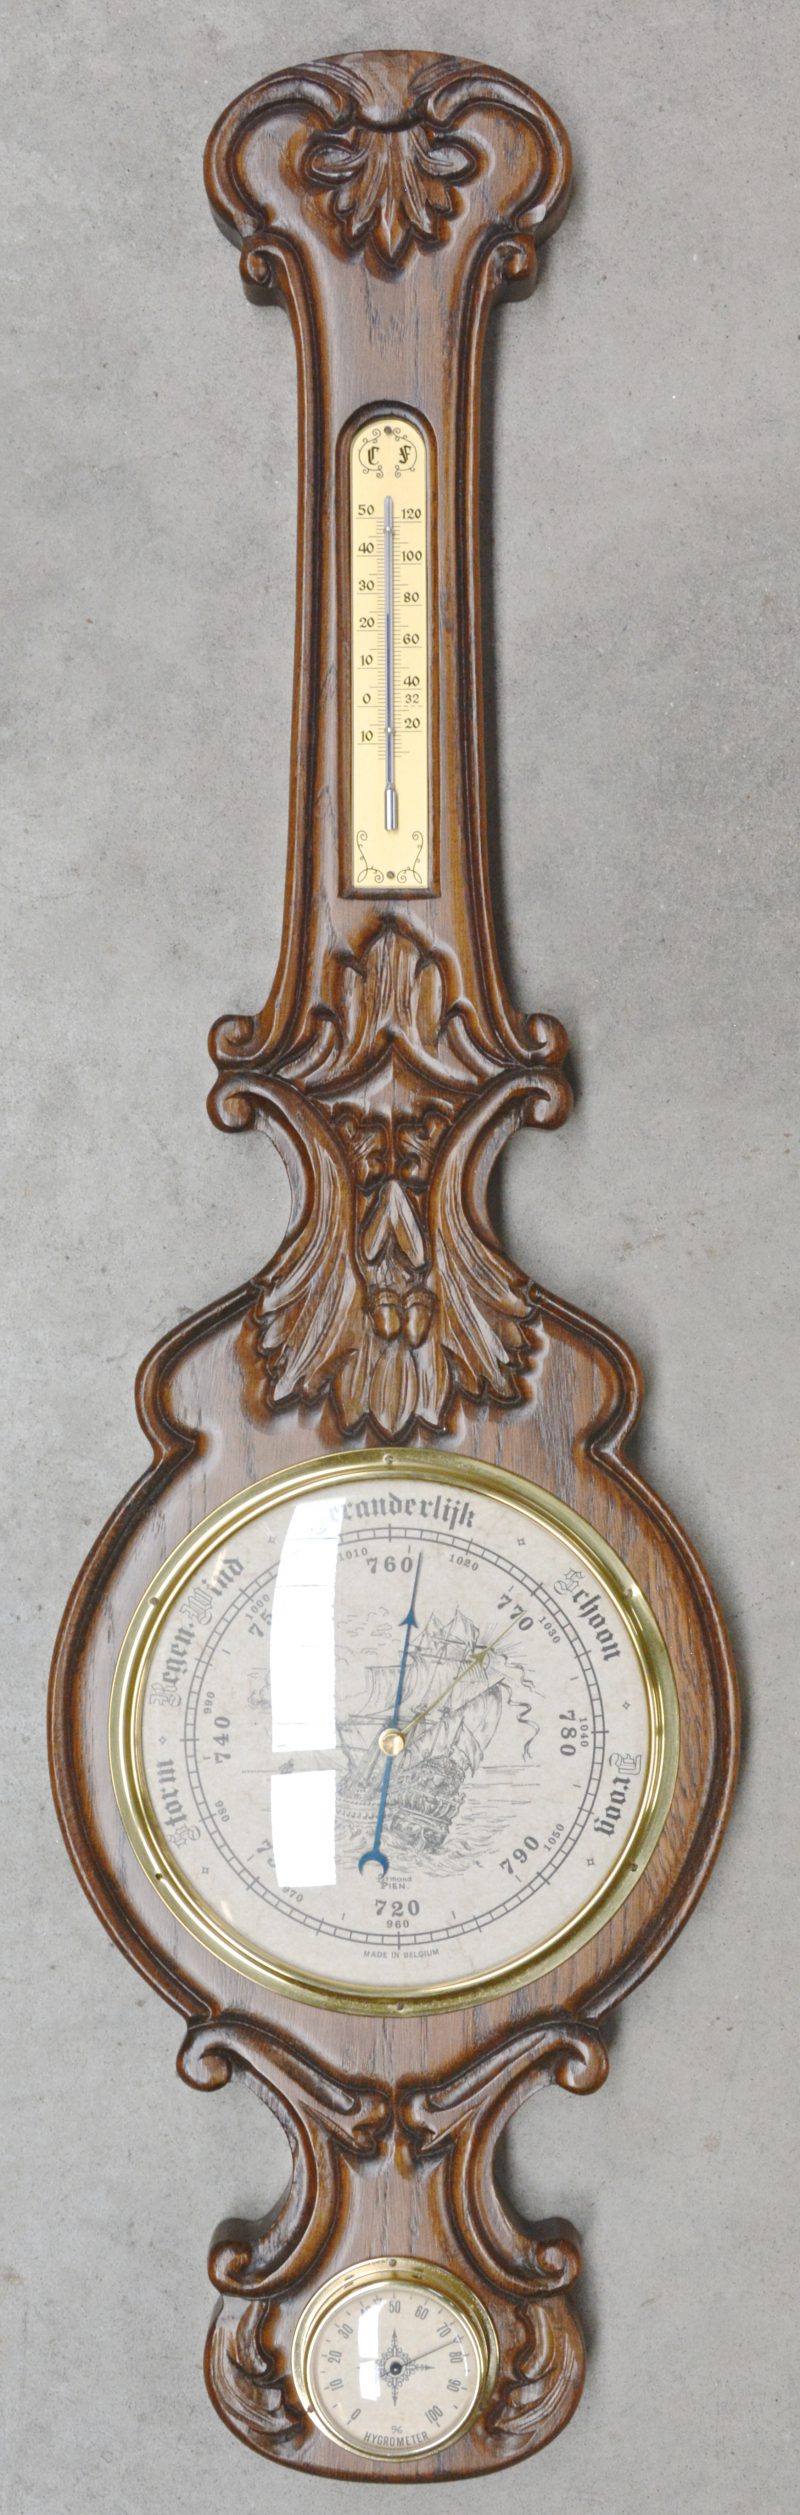 Een barometer in houten kast.